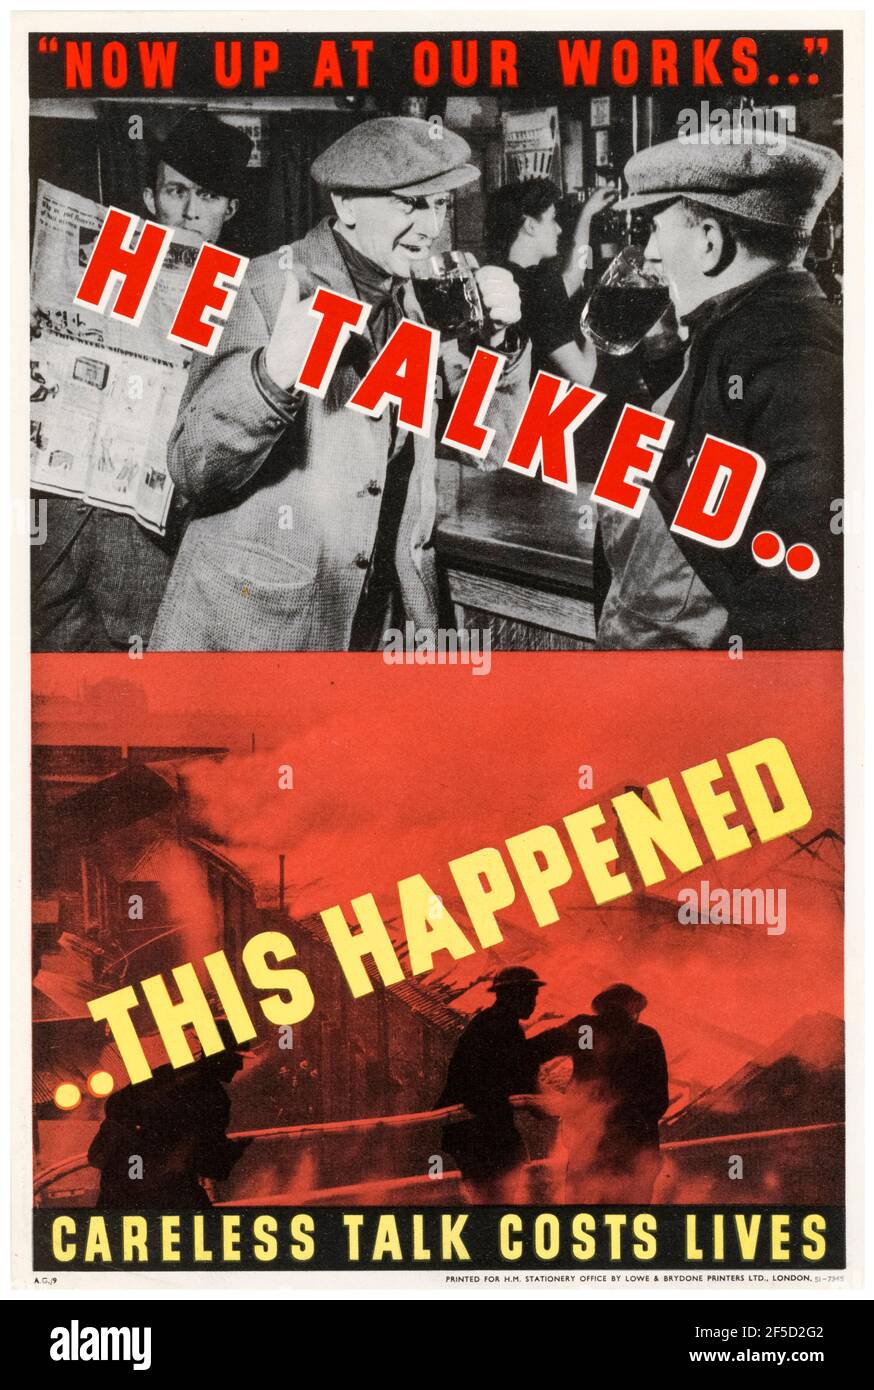 Il a parlé, ceci s'est produit: Entretien négligent coûte des vies, British, WW2 public information Poster, 1942-1945 Banque D'Images